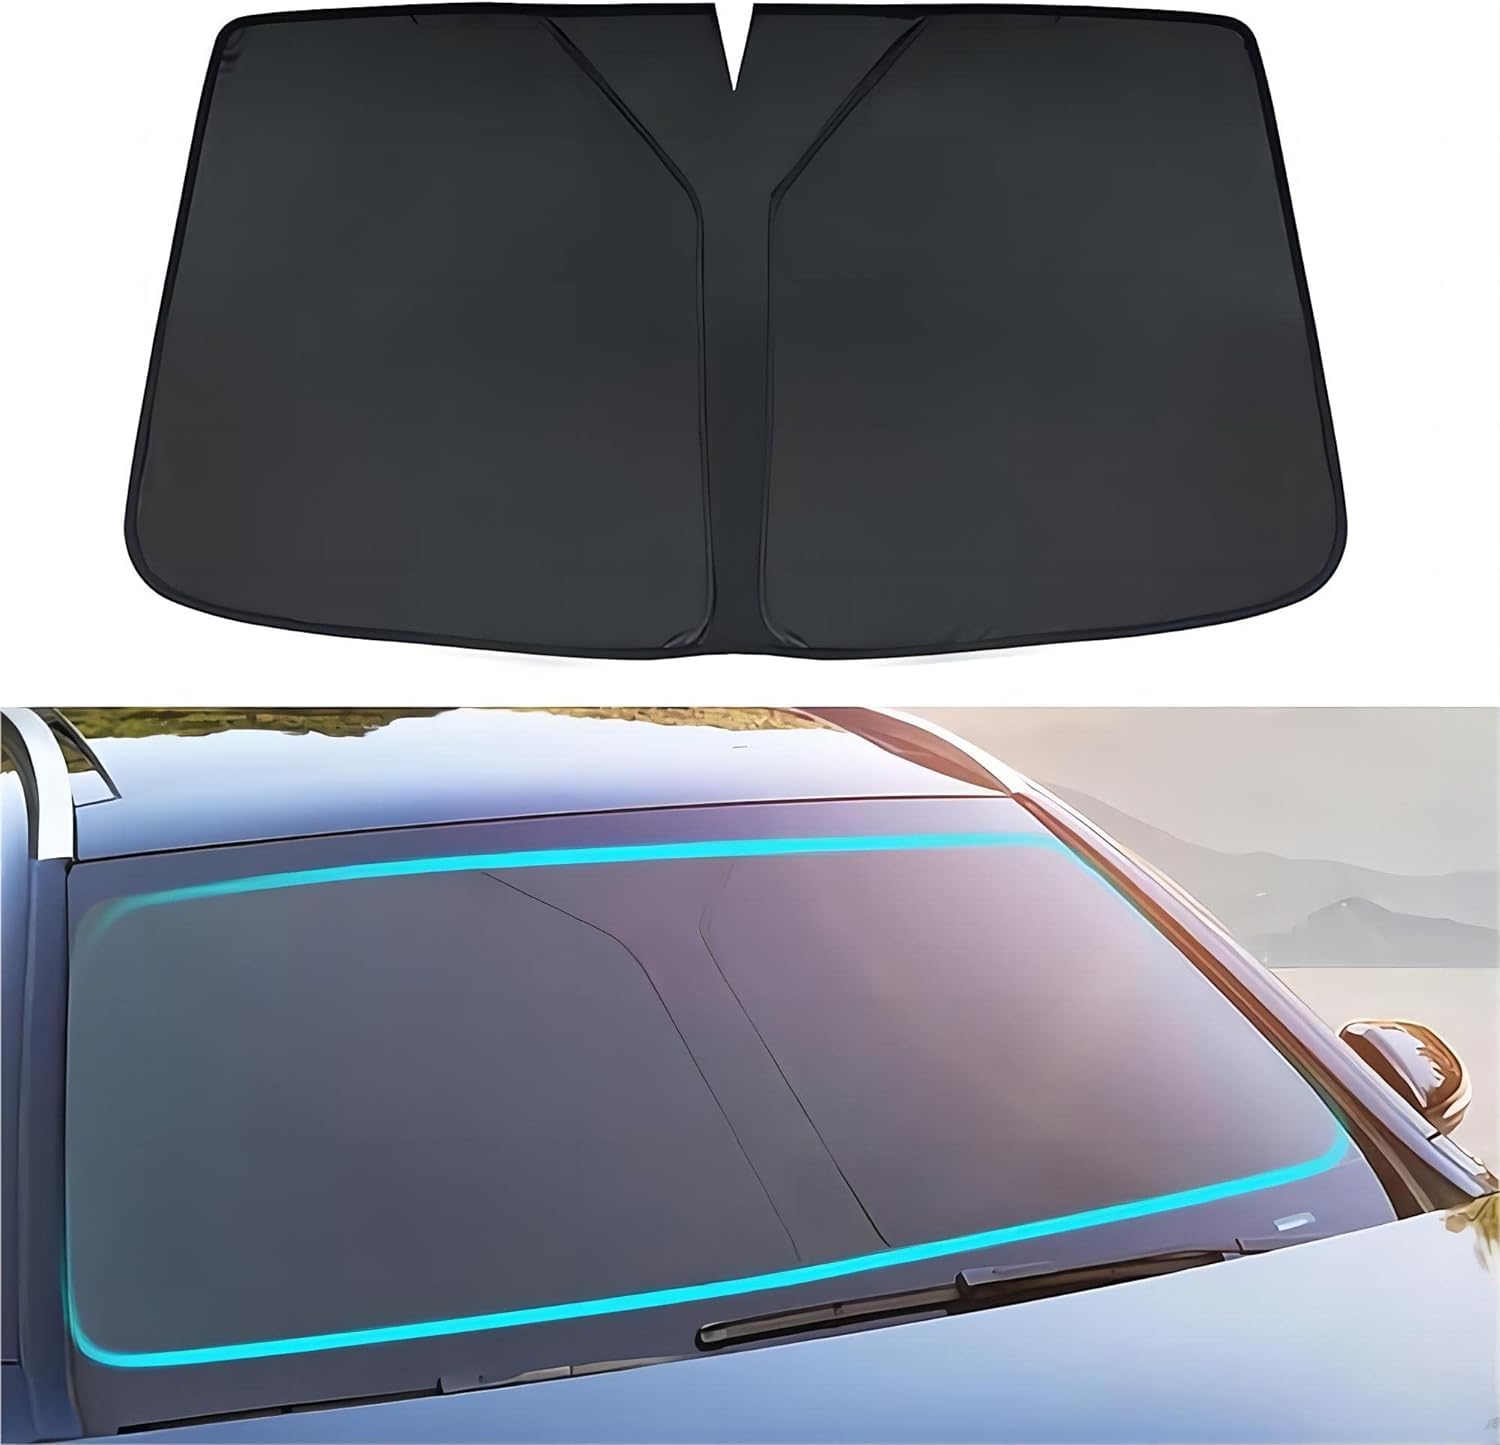 Sonnenschutz Auto Frontscheibe für Hyundai Elantra AD 2015 2016 2017 2018 2019 2020, Windschutzscheibe Sonnenschutz Faltbare UV-Schutz Auto Zubehör,Black von UUJYSEXW